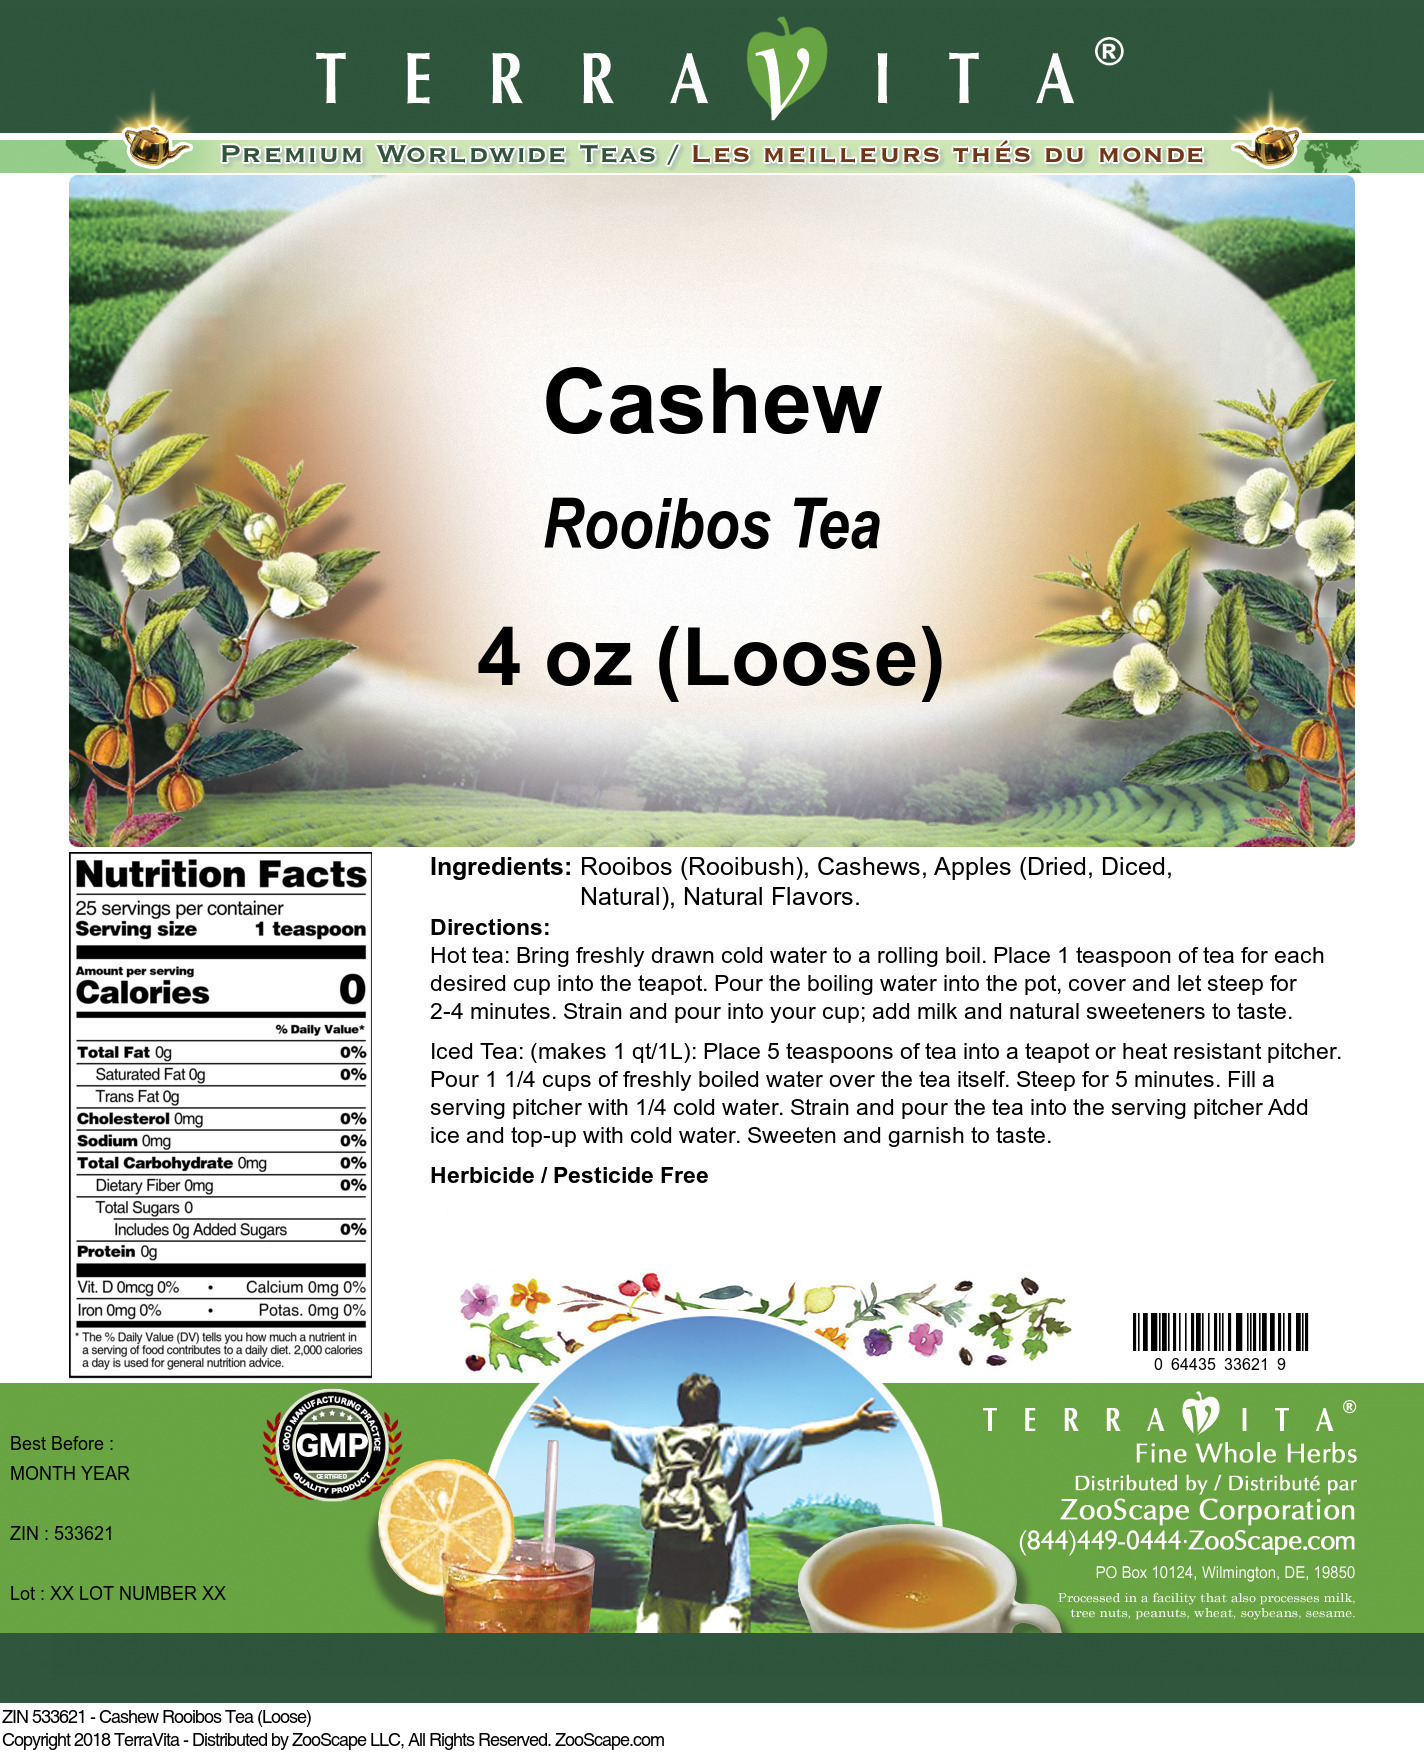 Cashew Rooibos Tea (Loose) - Label